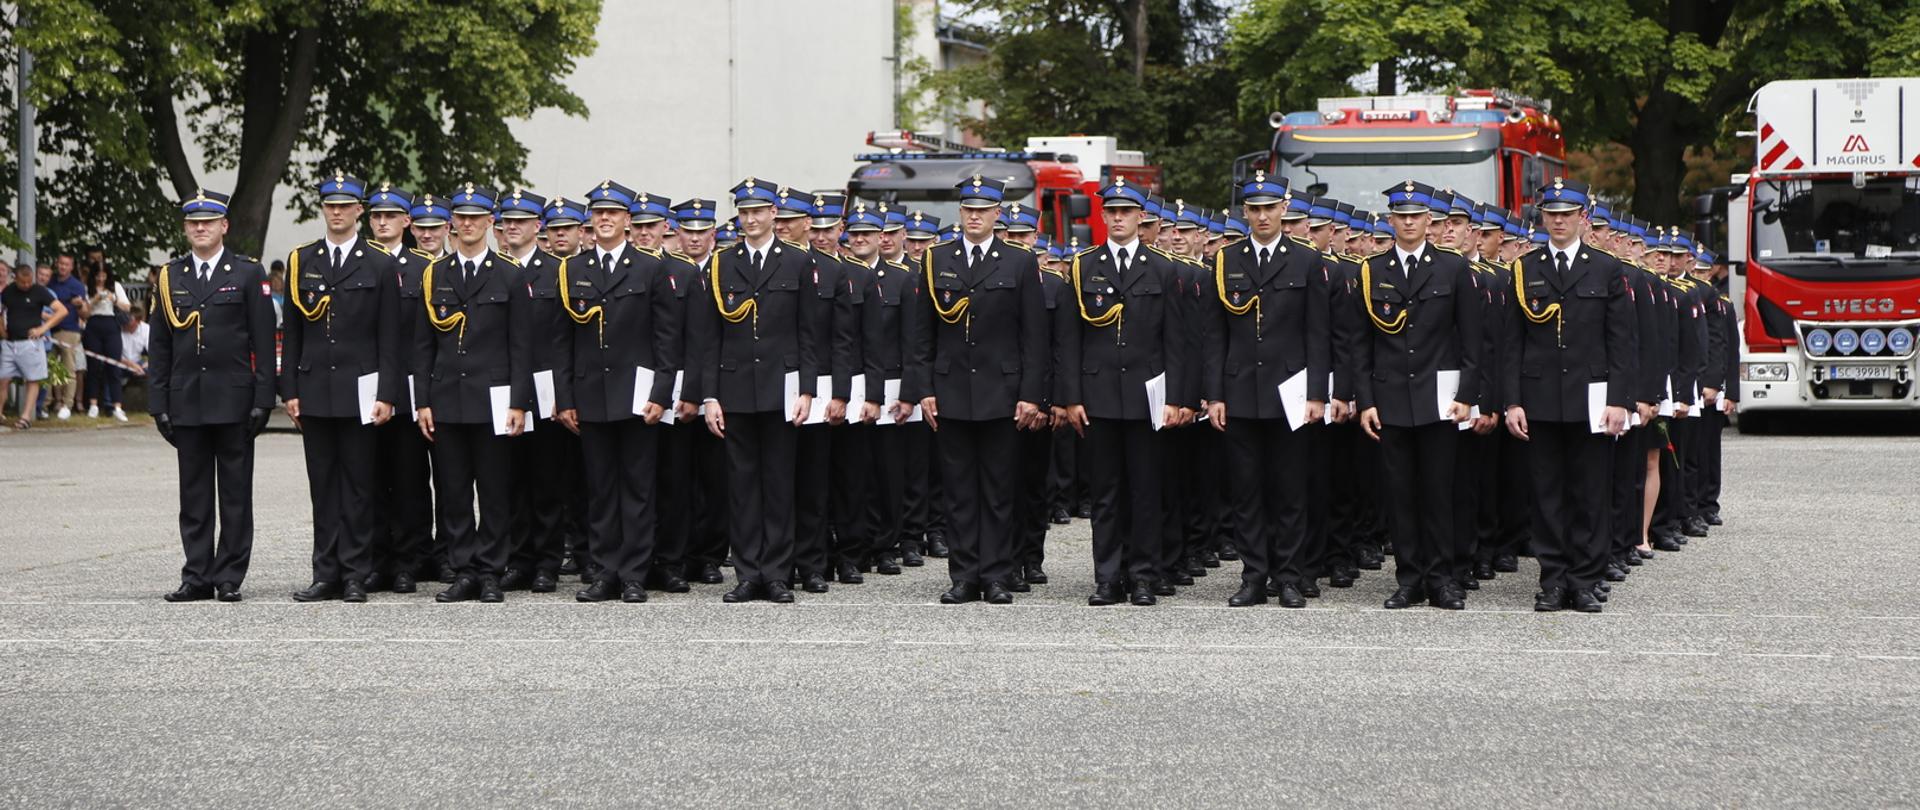 Grupa strażaków w mundurach galowych stoi na placu podczas promocji